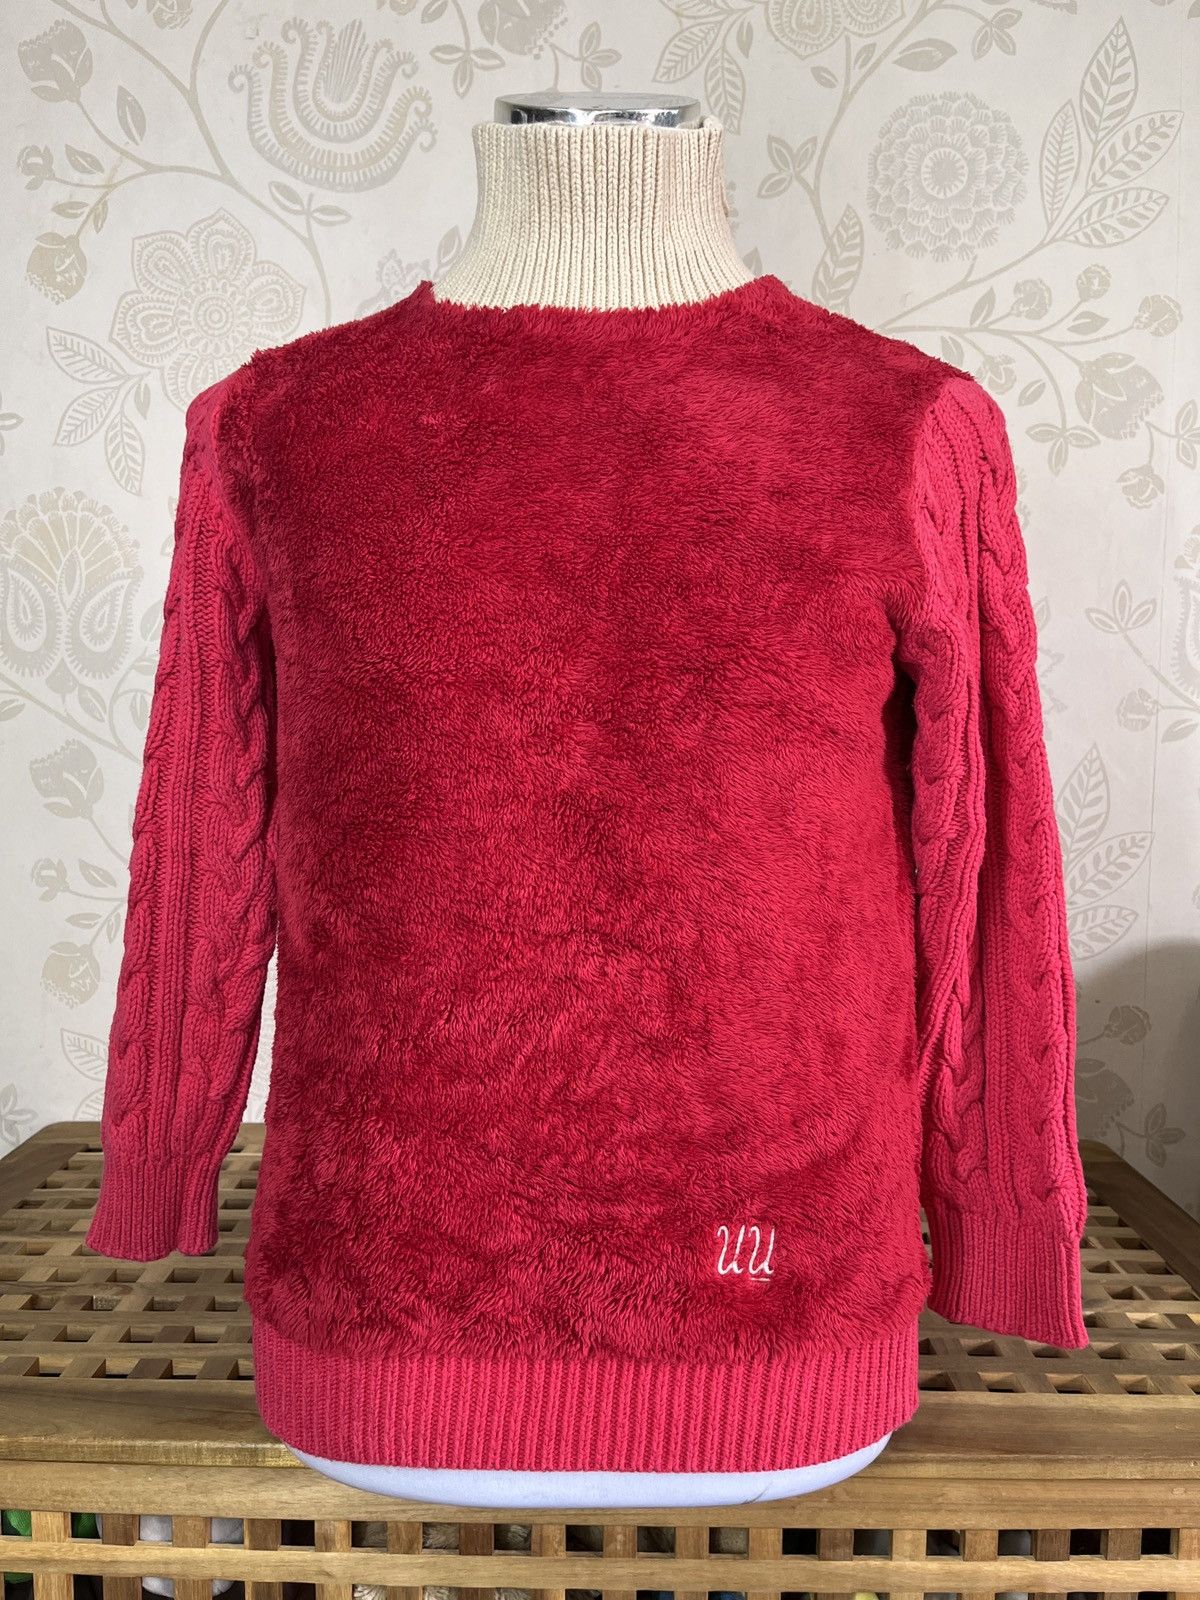 Undercover X Uniqlo Sweater Rare Red Colour - 3